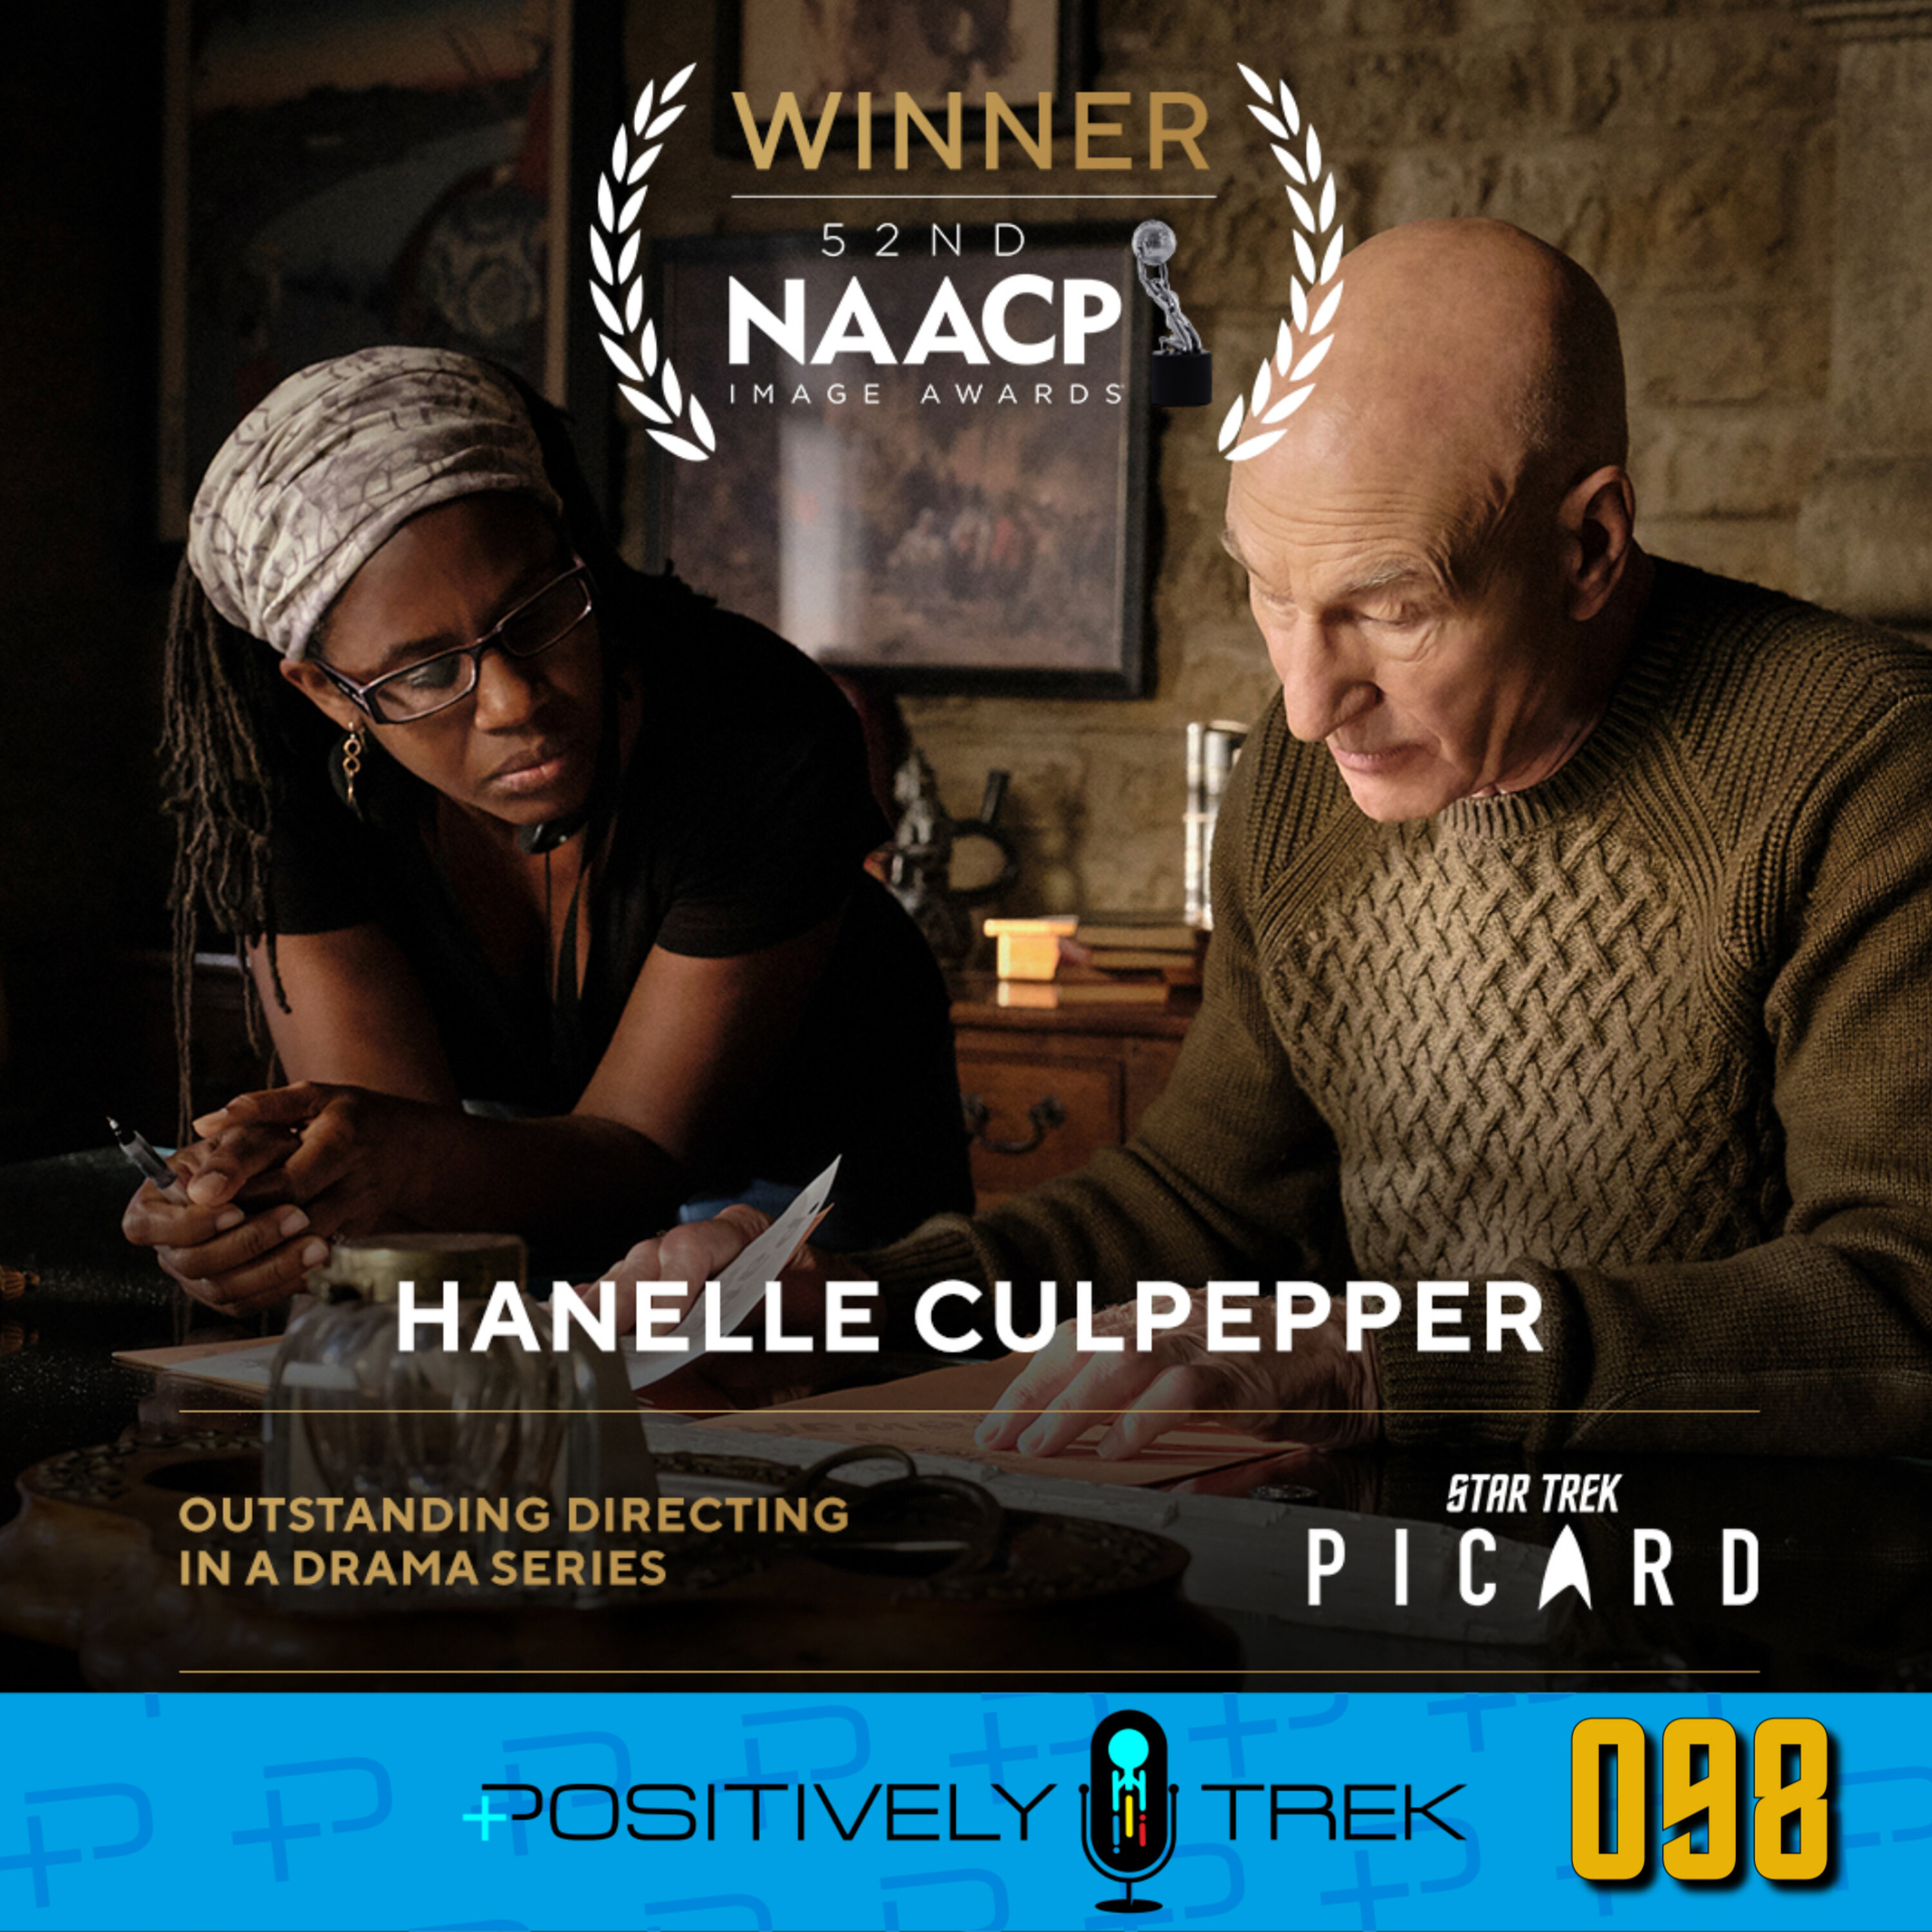 Hanelle Culpepper Honored for Star Trek: Picard Image